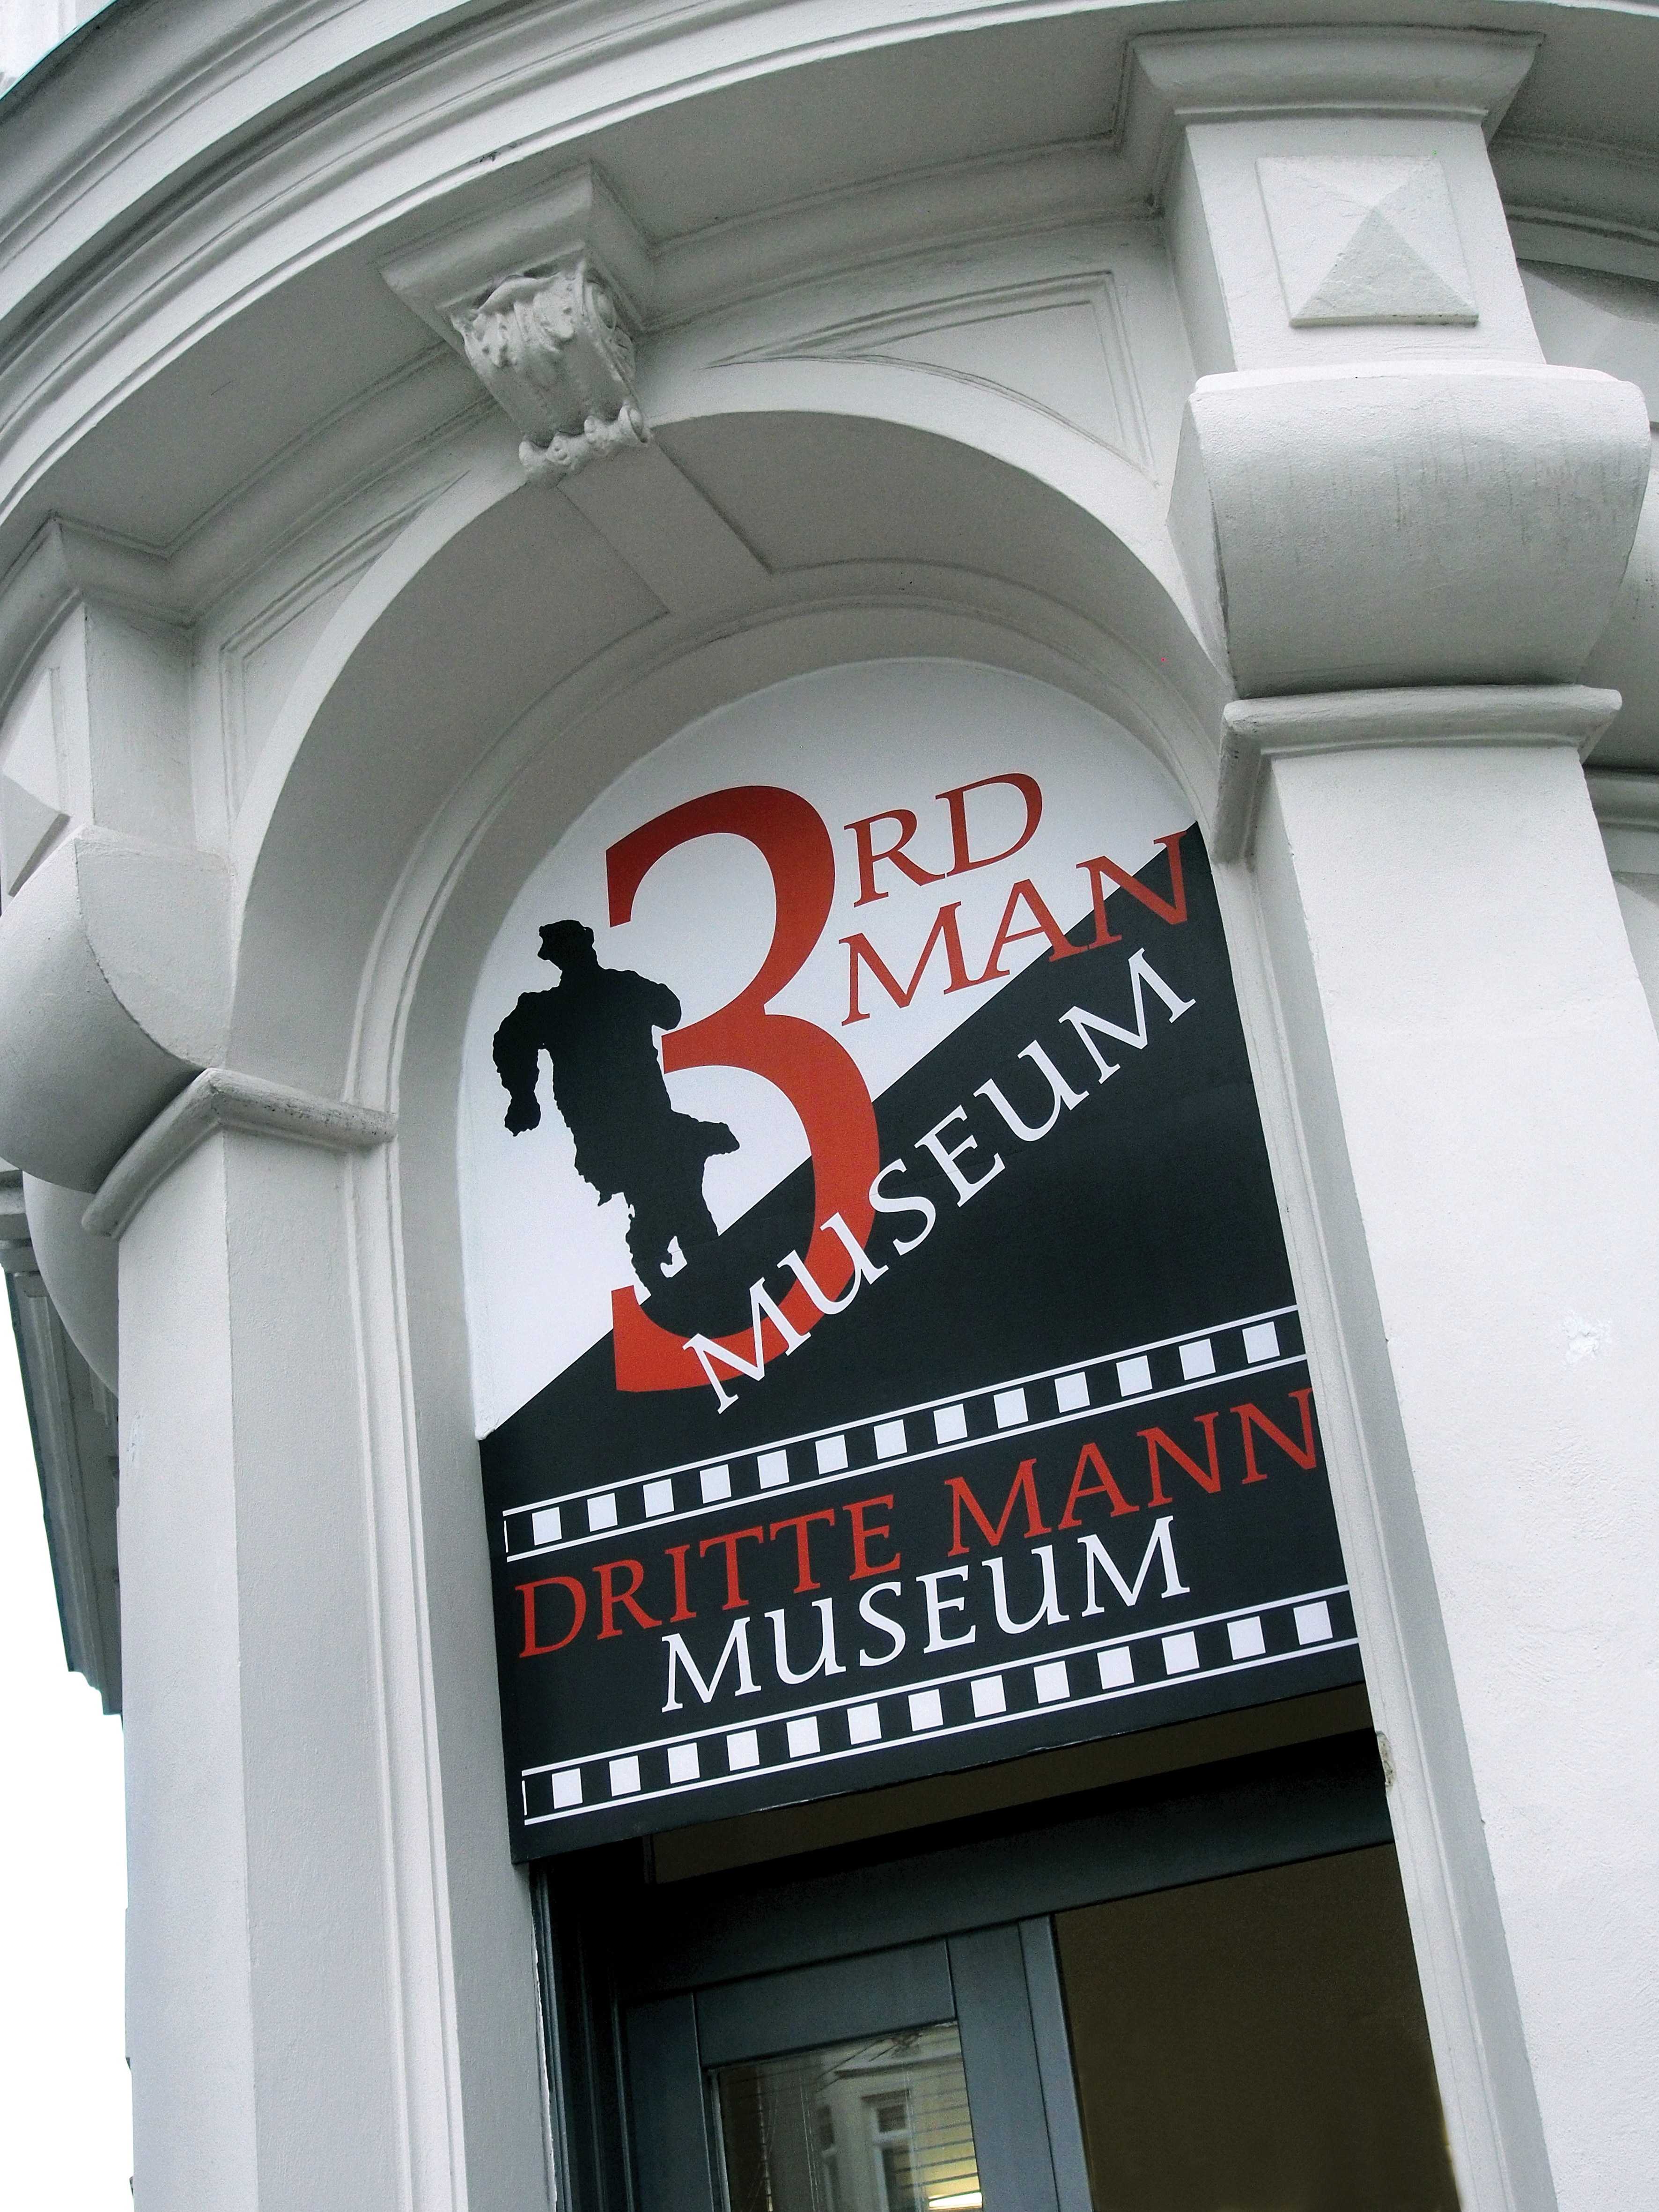 70 Years Film Premiere "The Third Man", Third Man museum, Vienna: 13 June 2020-9 January 2021